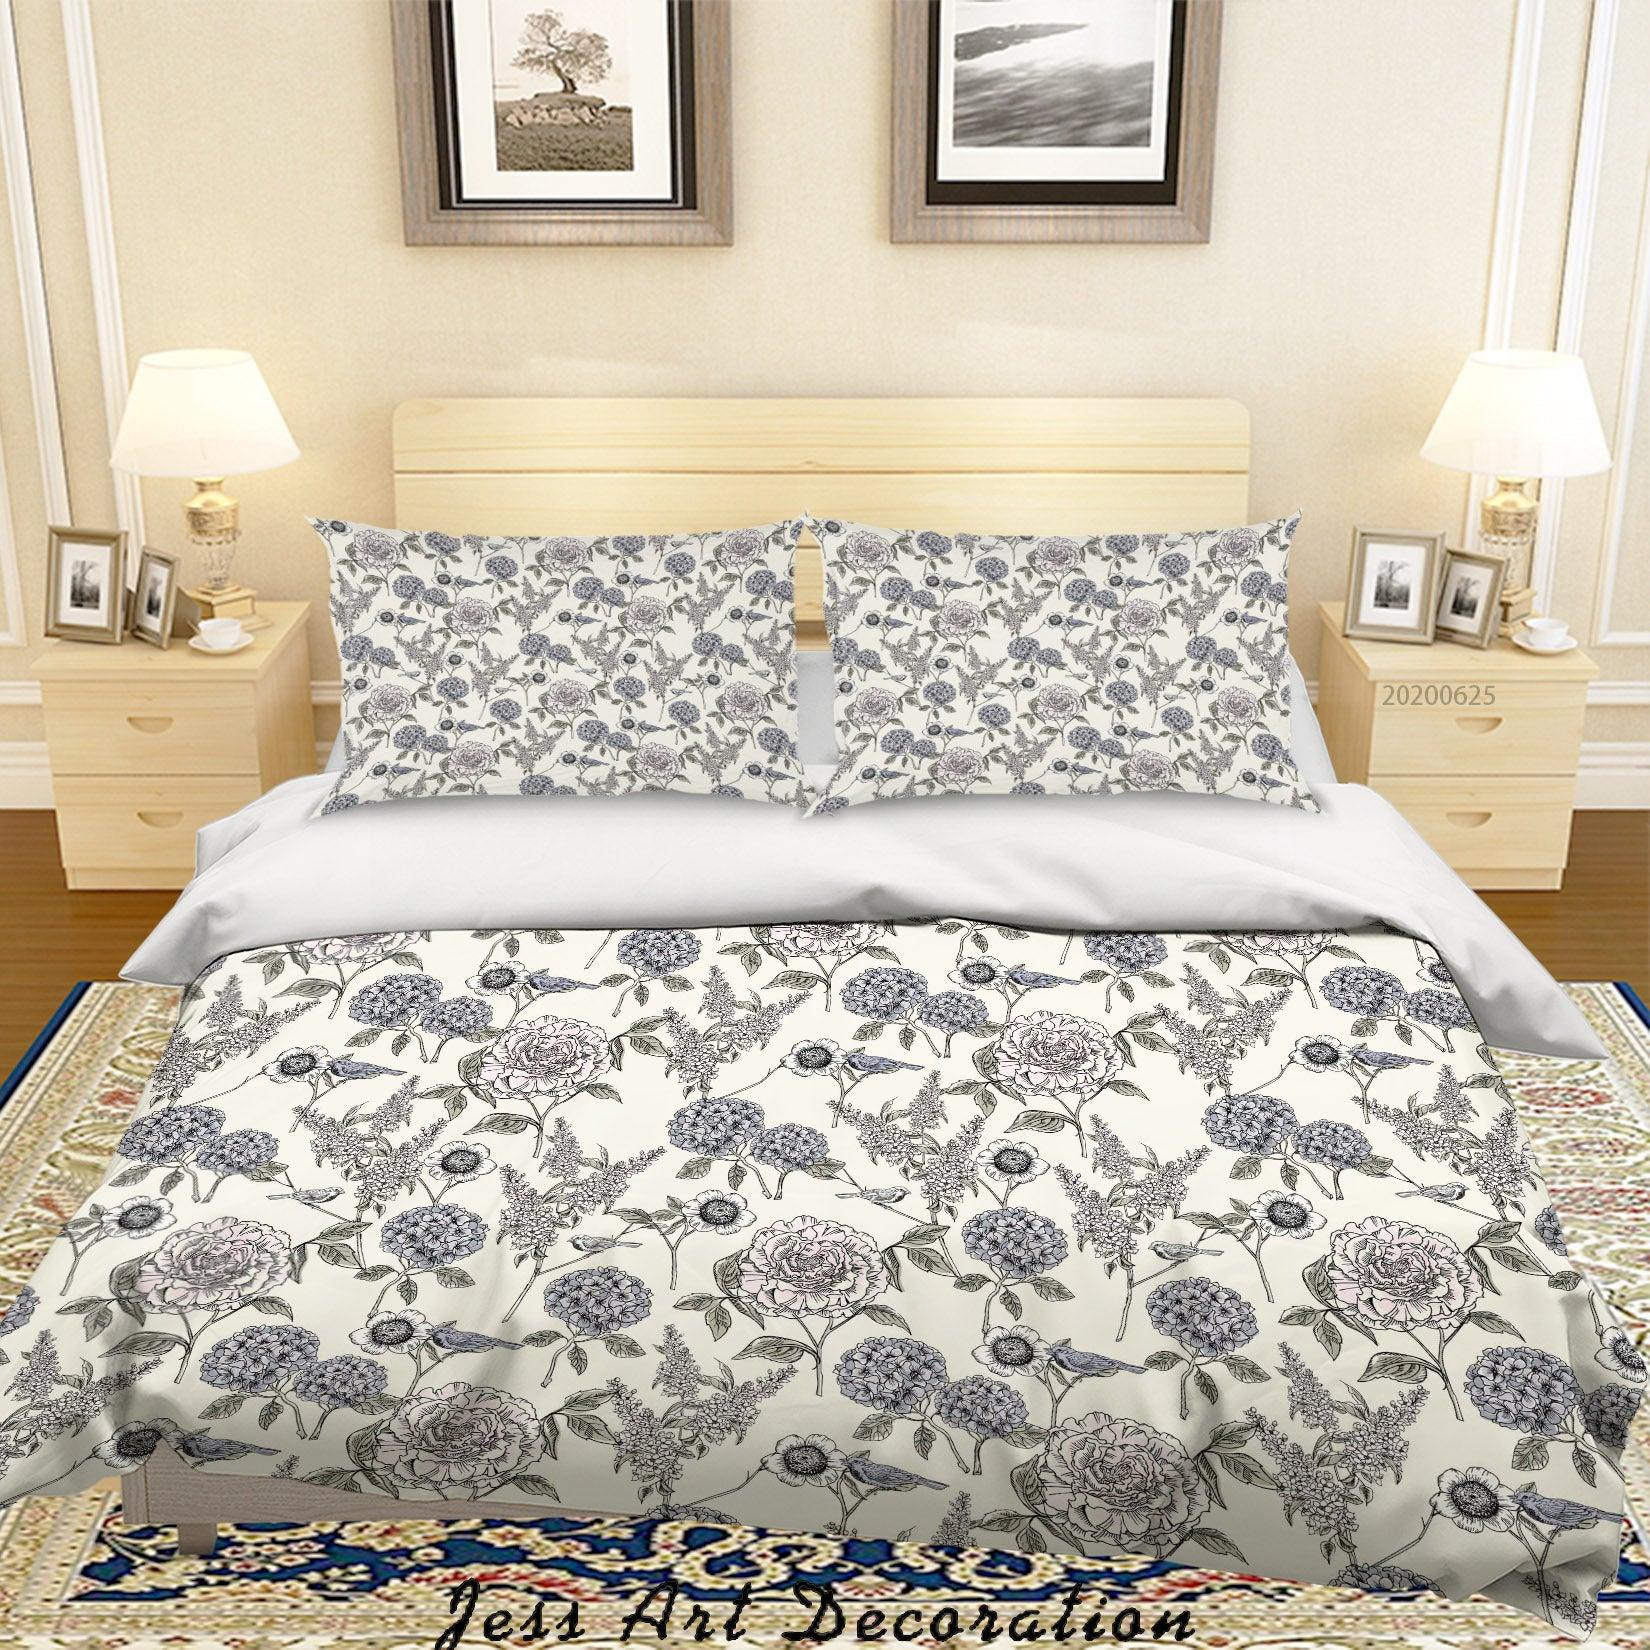 3D White Floral Quilt Cover Set Bedding Set Duvet Cover Pillowcases SF55- Jess Art Decoration